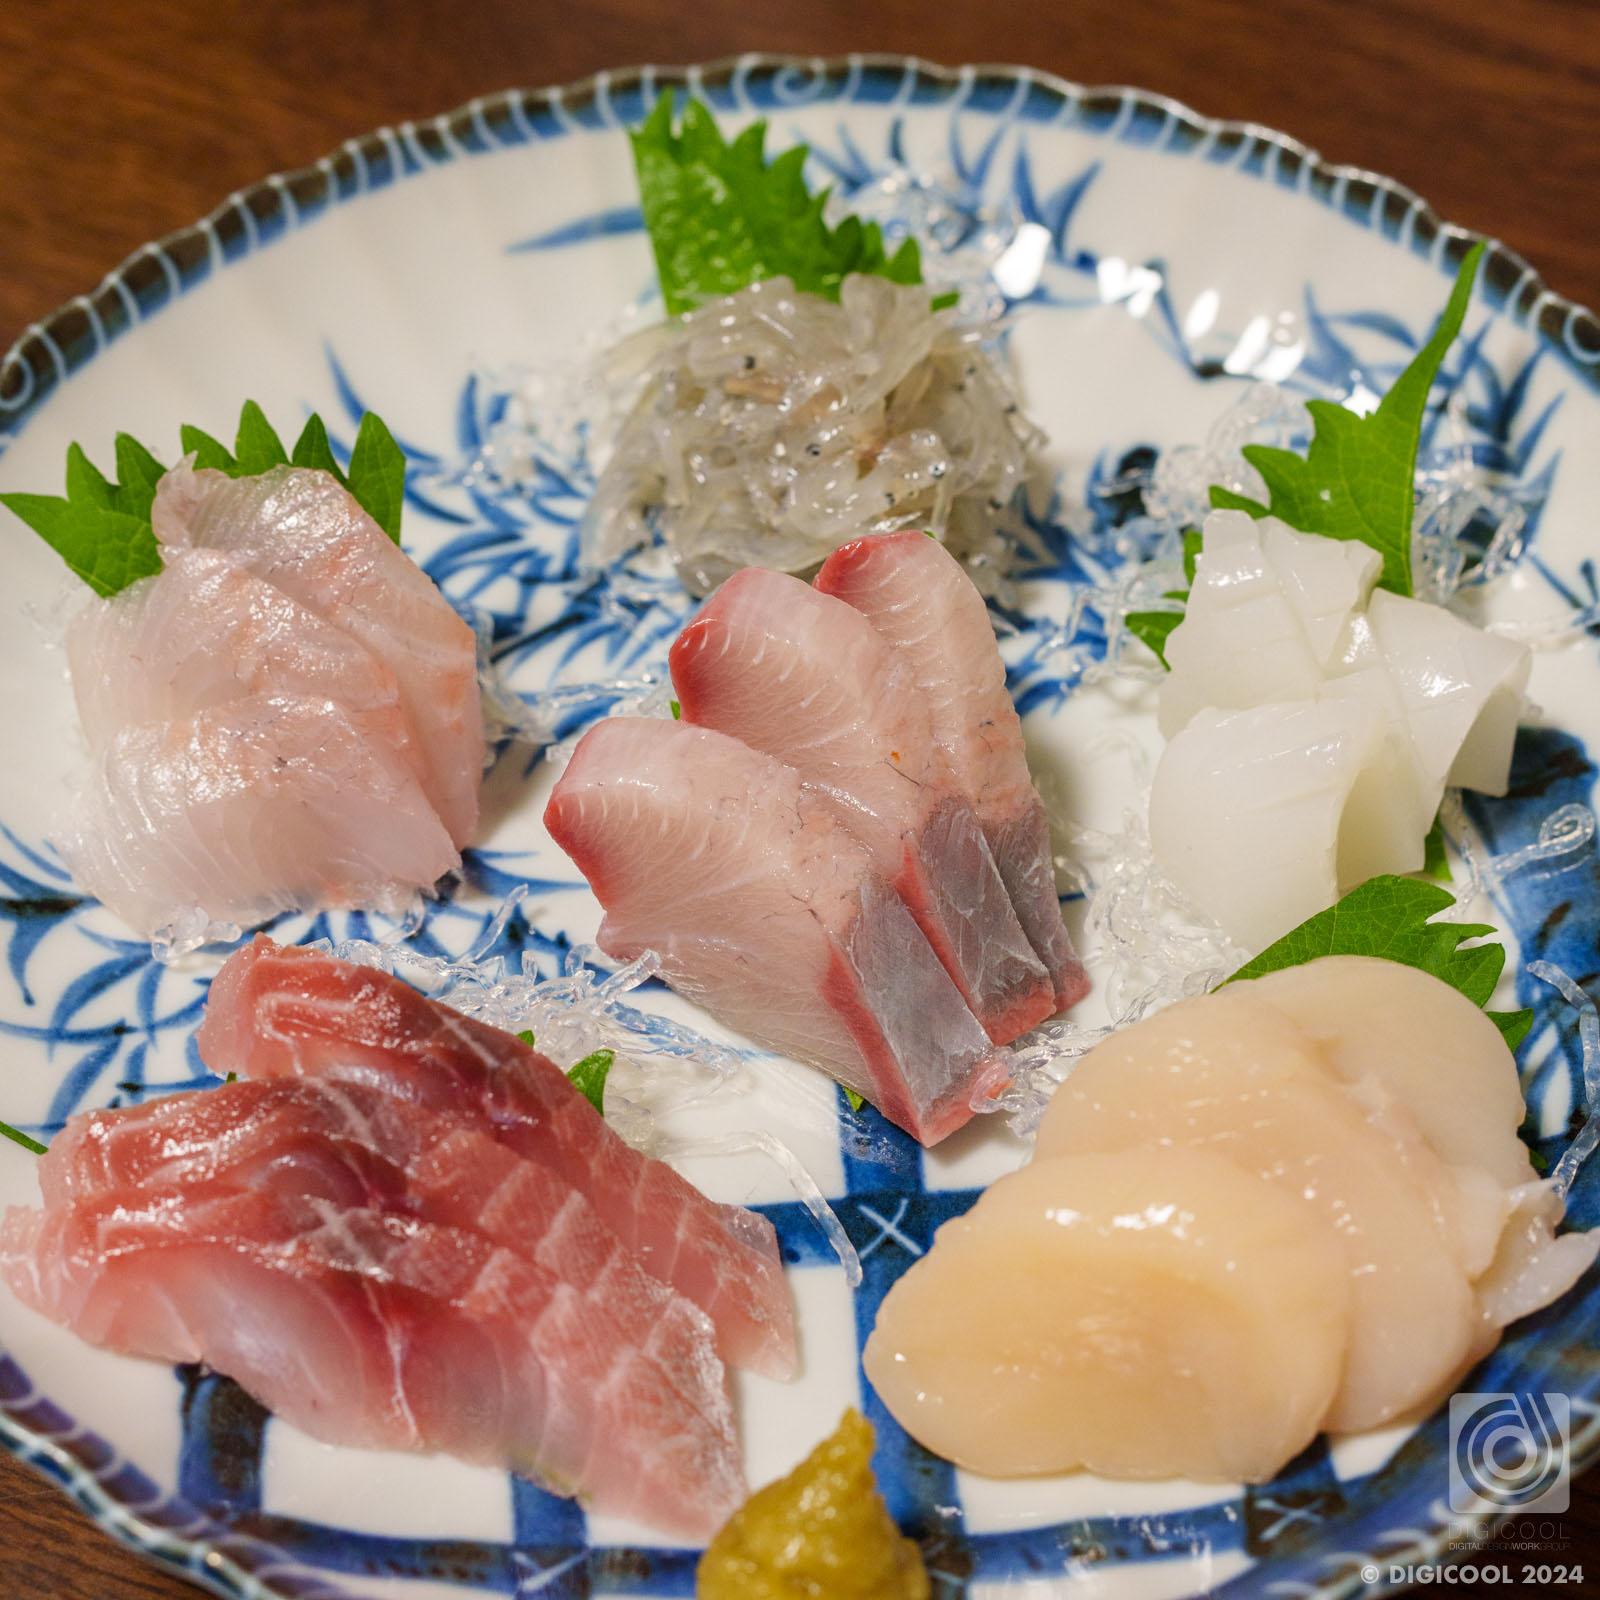 東京都 品川区・戸越銀座の「小料理あさひ」はほっこり落ち着く小料理屋でした。